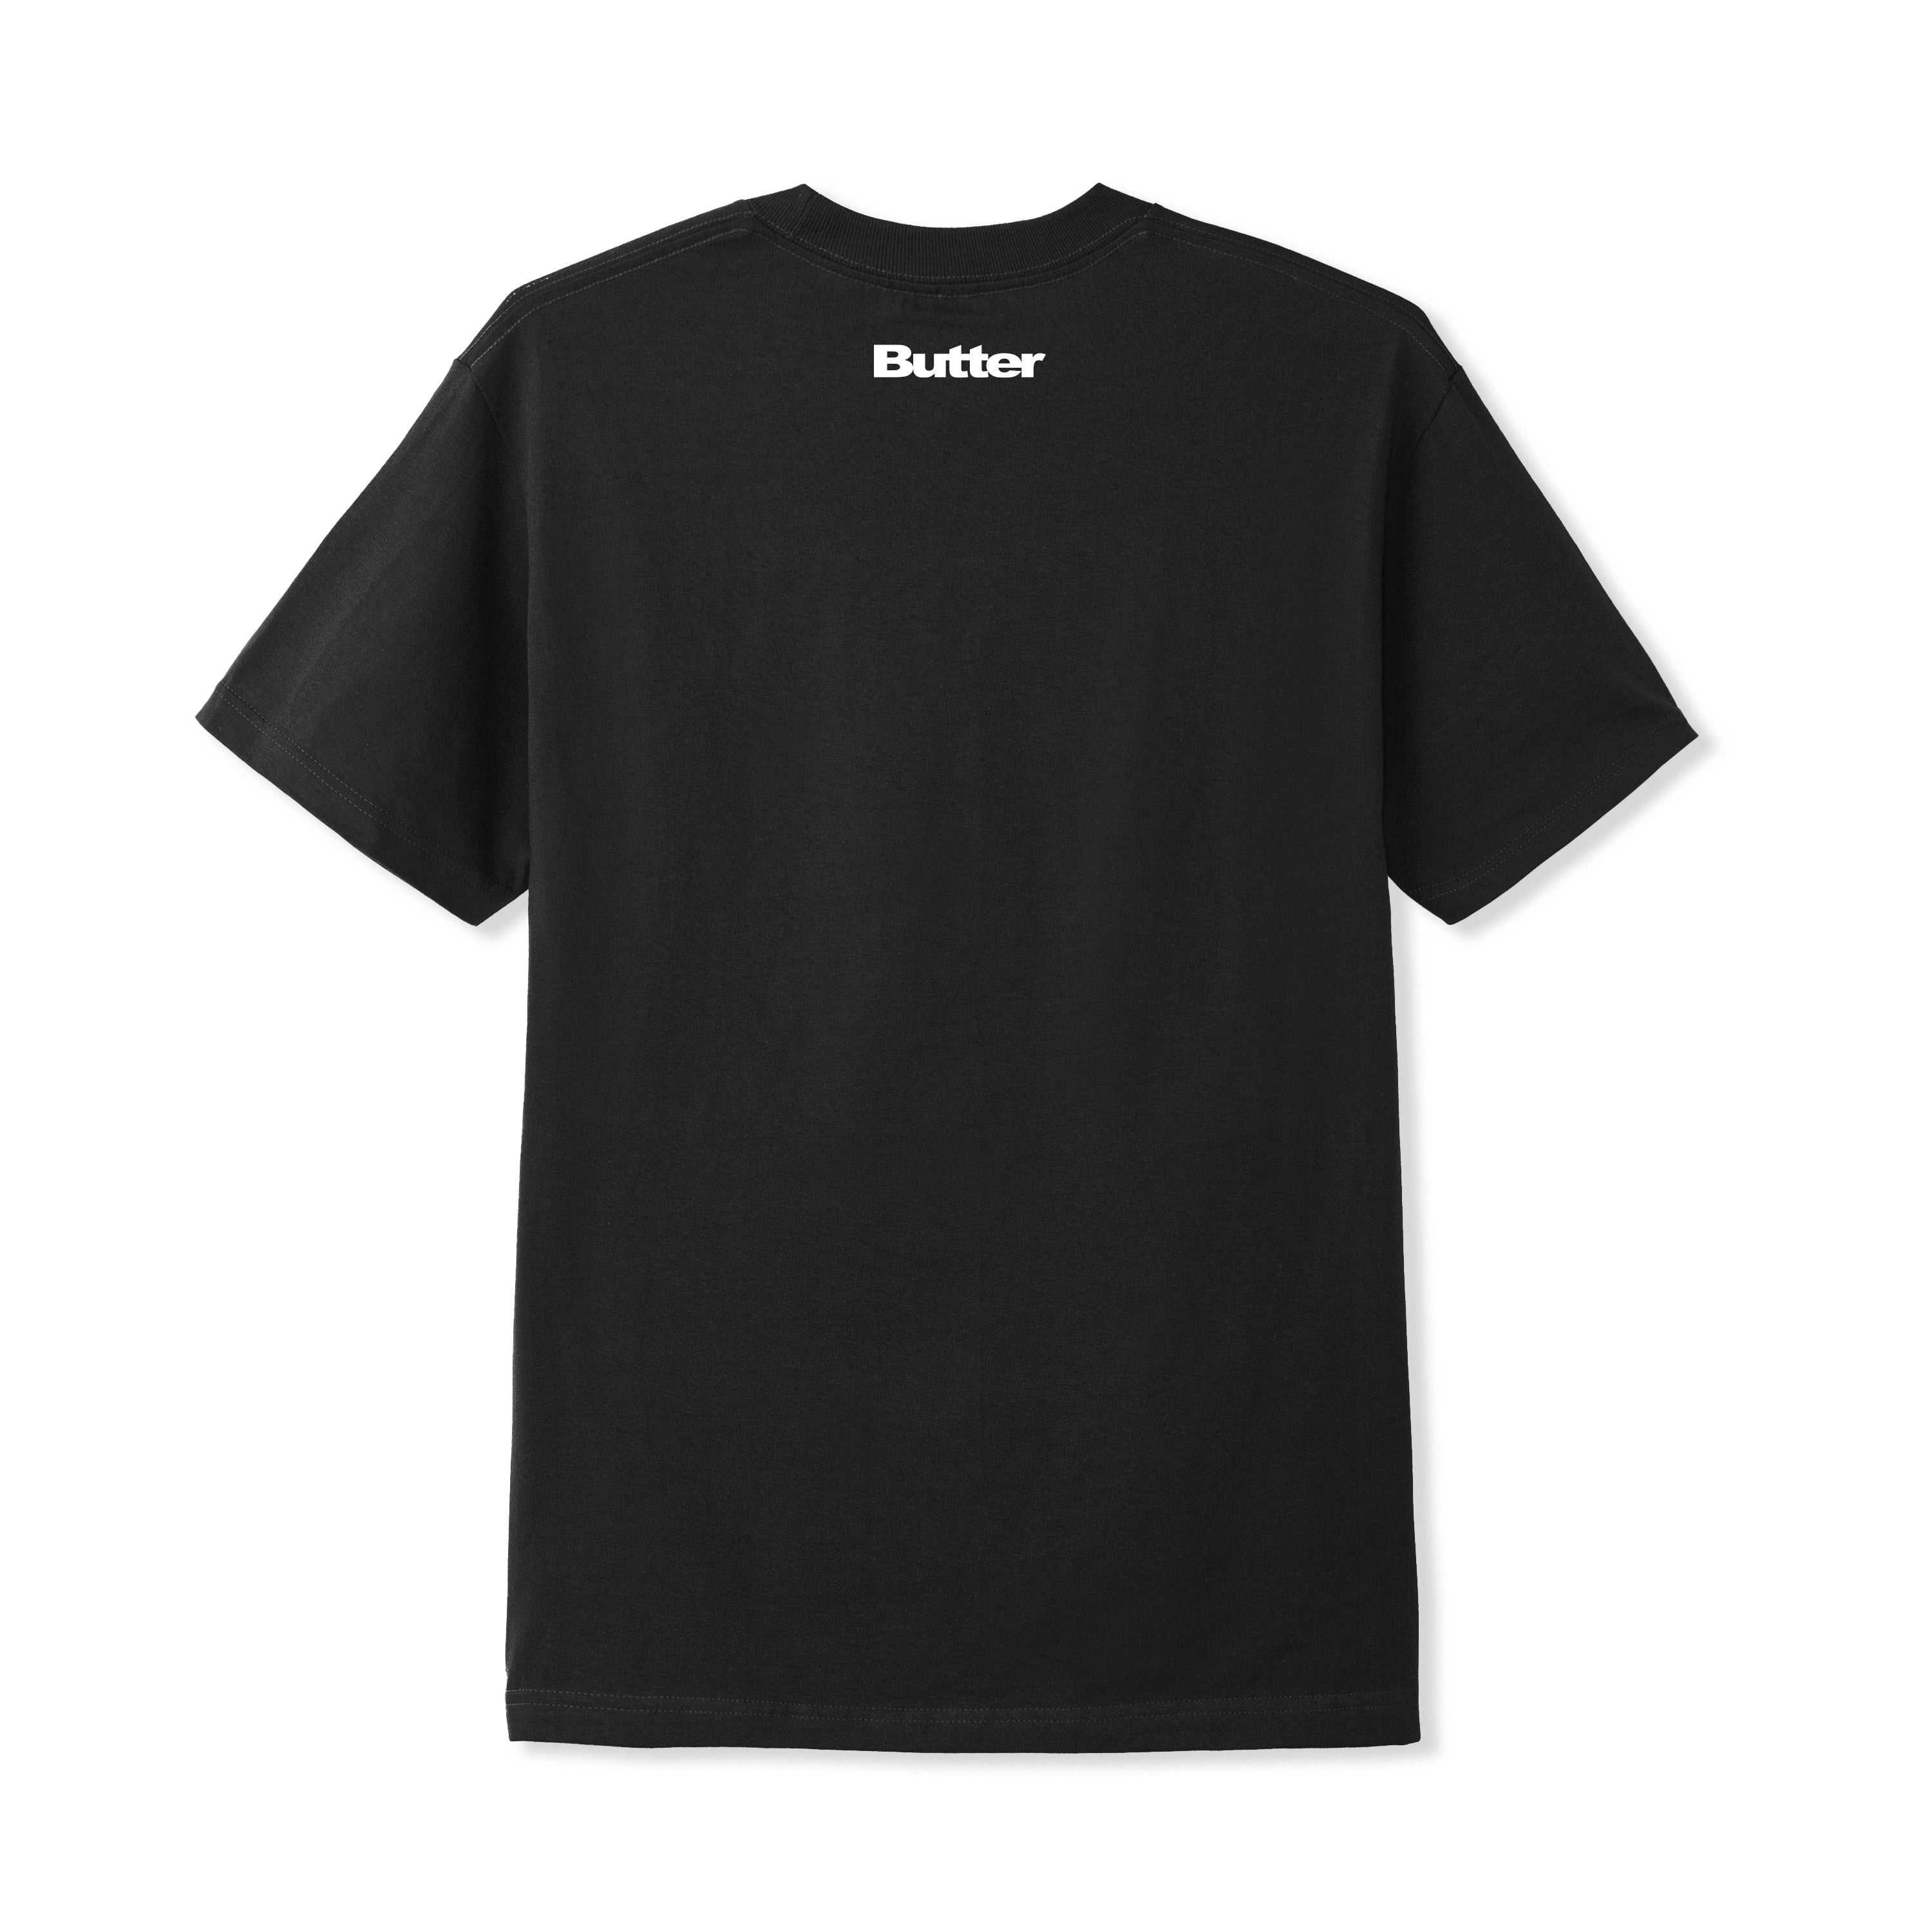 Butter Goods x Fantasia T-shirt - Black